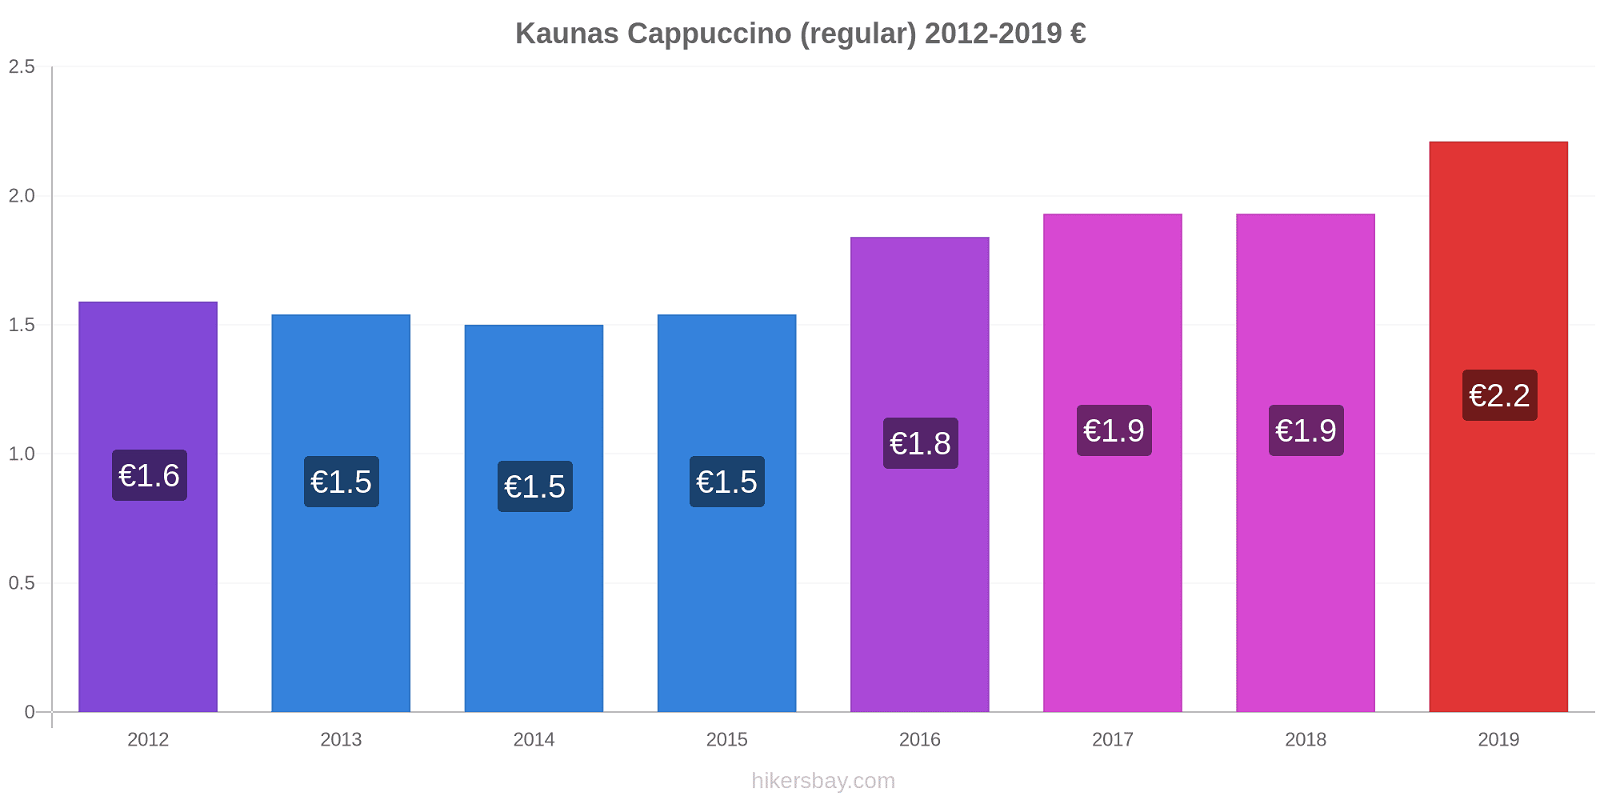 Kaunas price changes Cappuccino (regular) hikersbay.com